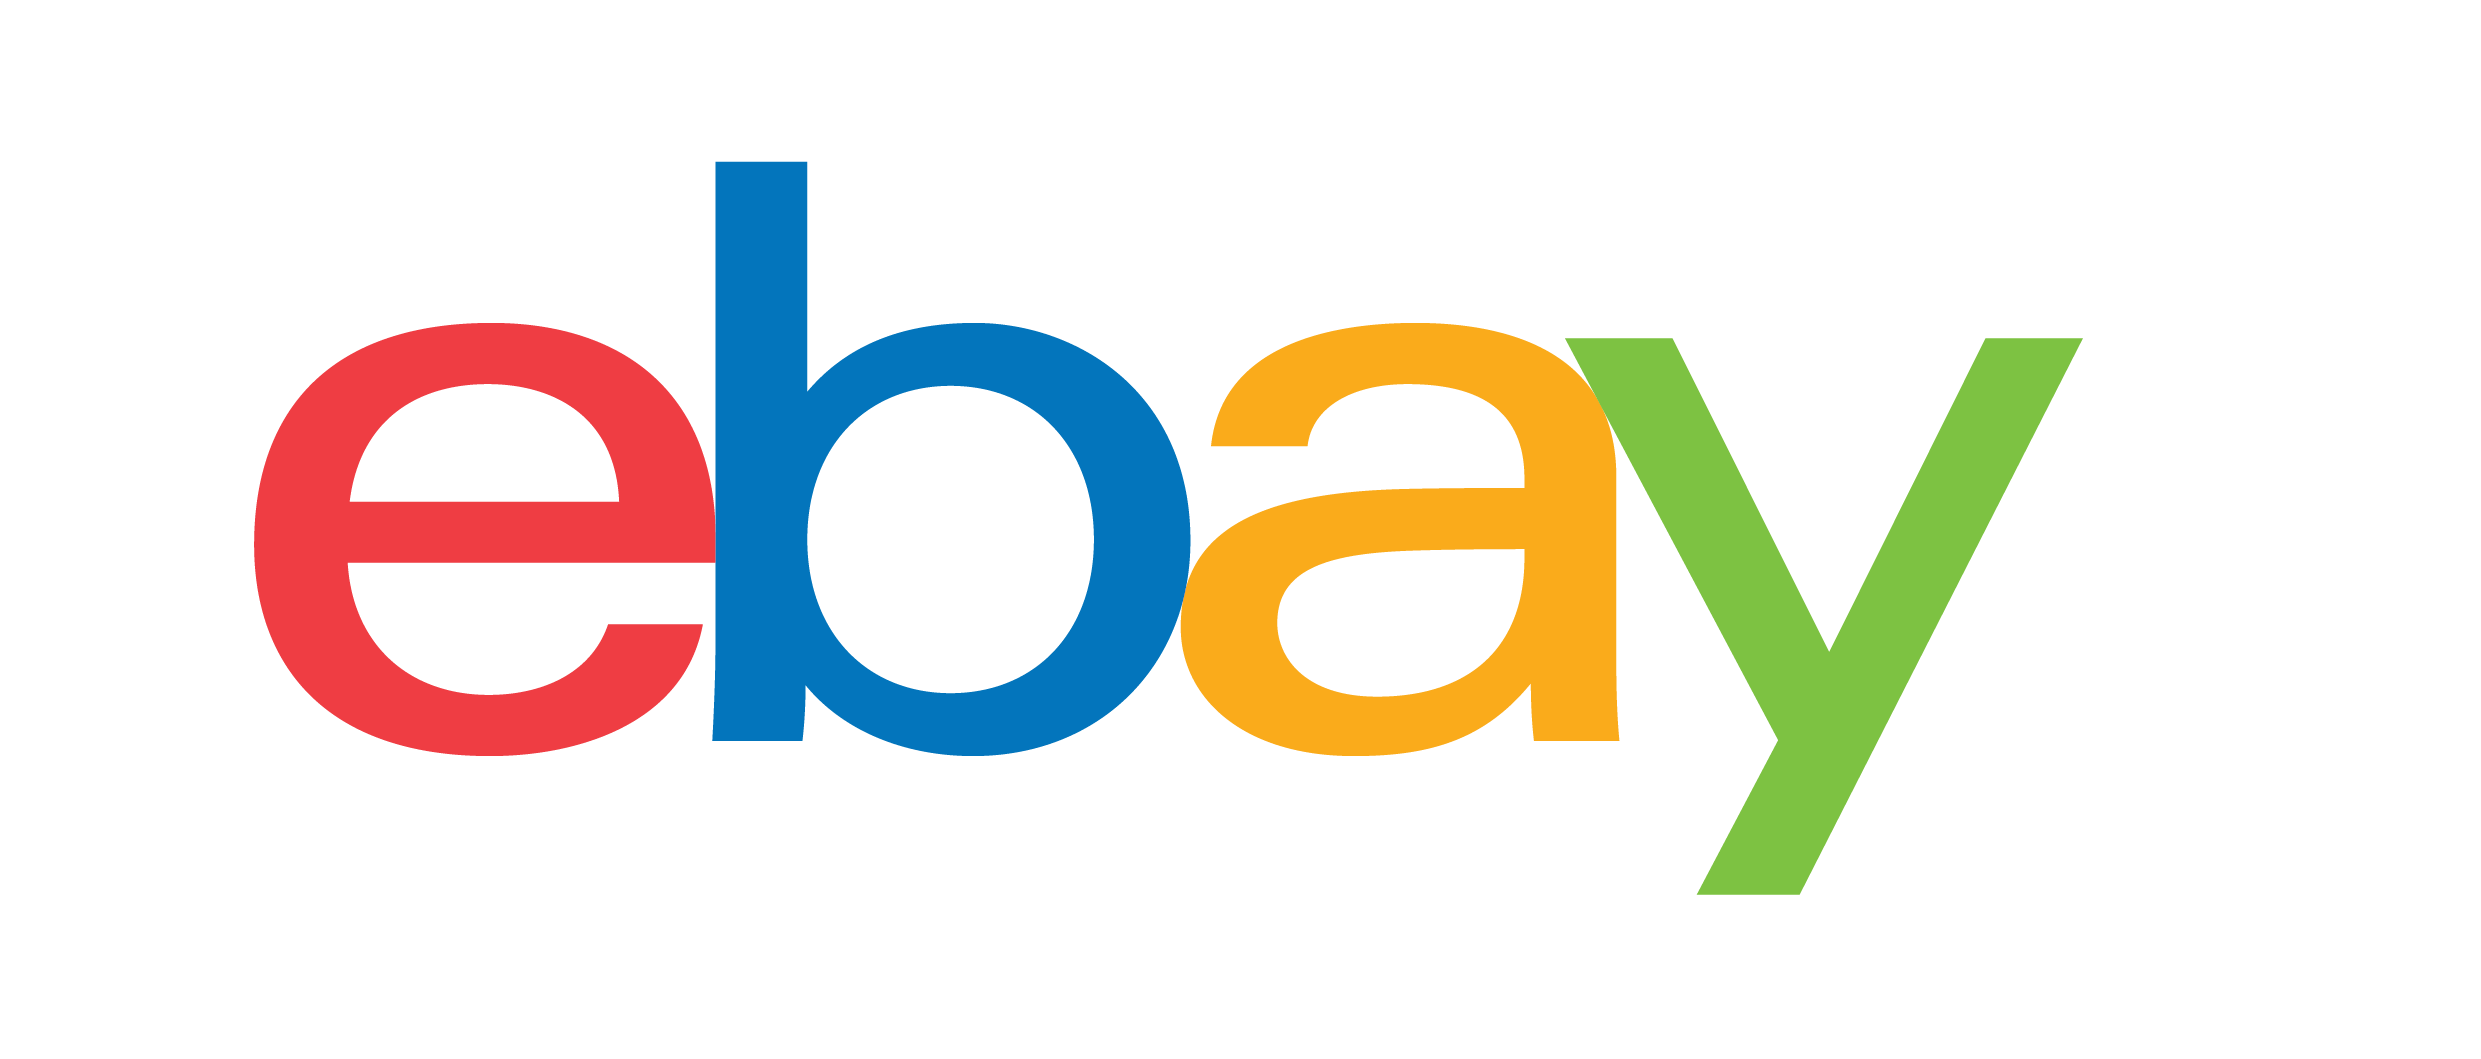 Logo eBay